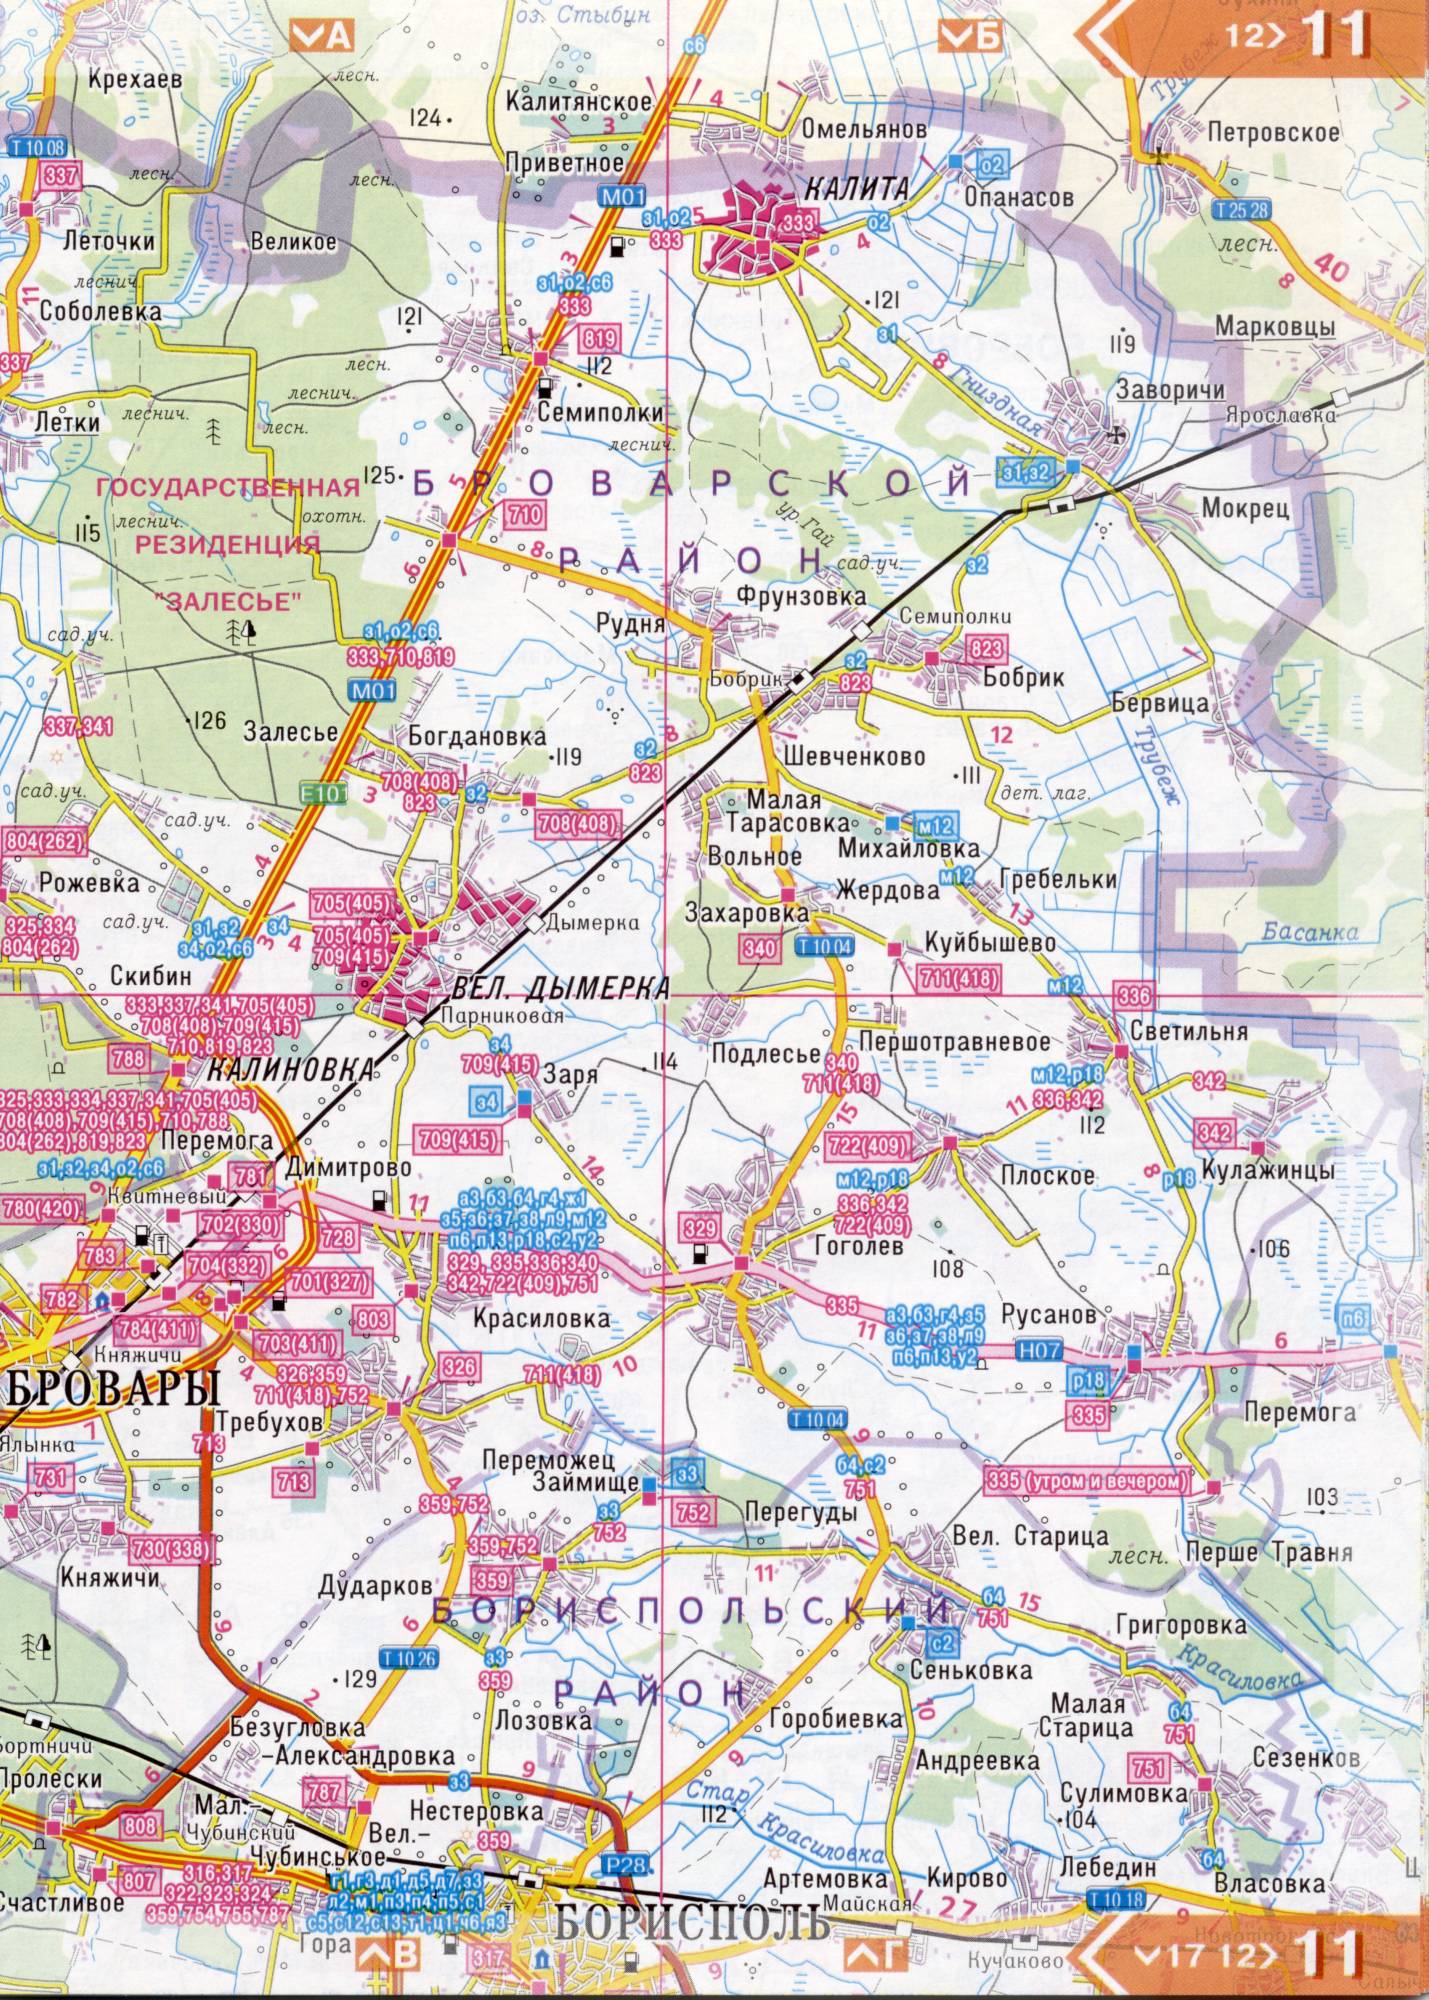 Atlas von der Region Kiew. Eine detaillierte Karte der Region Kiew von dem Atlas von Autobahnen. Kiewer Gebiet auf einer detaillierten Karte Maßstab 1cm = 3km. Frei, D2